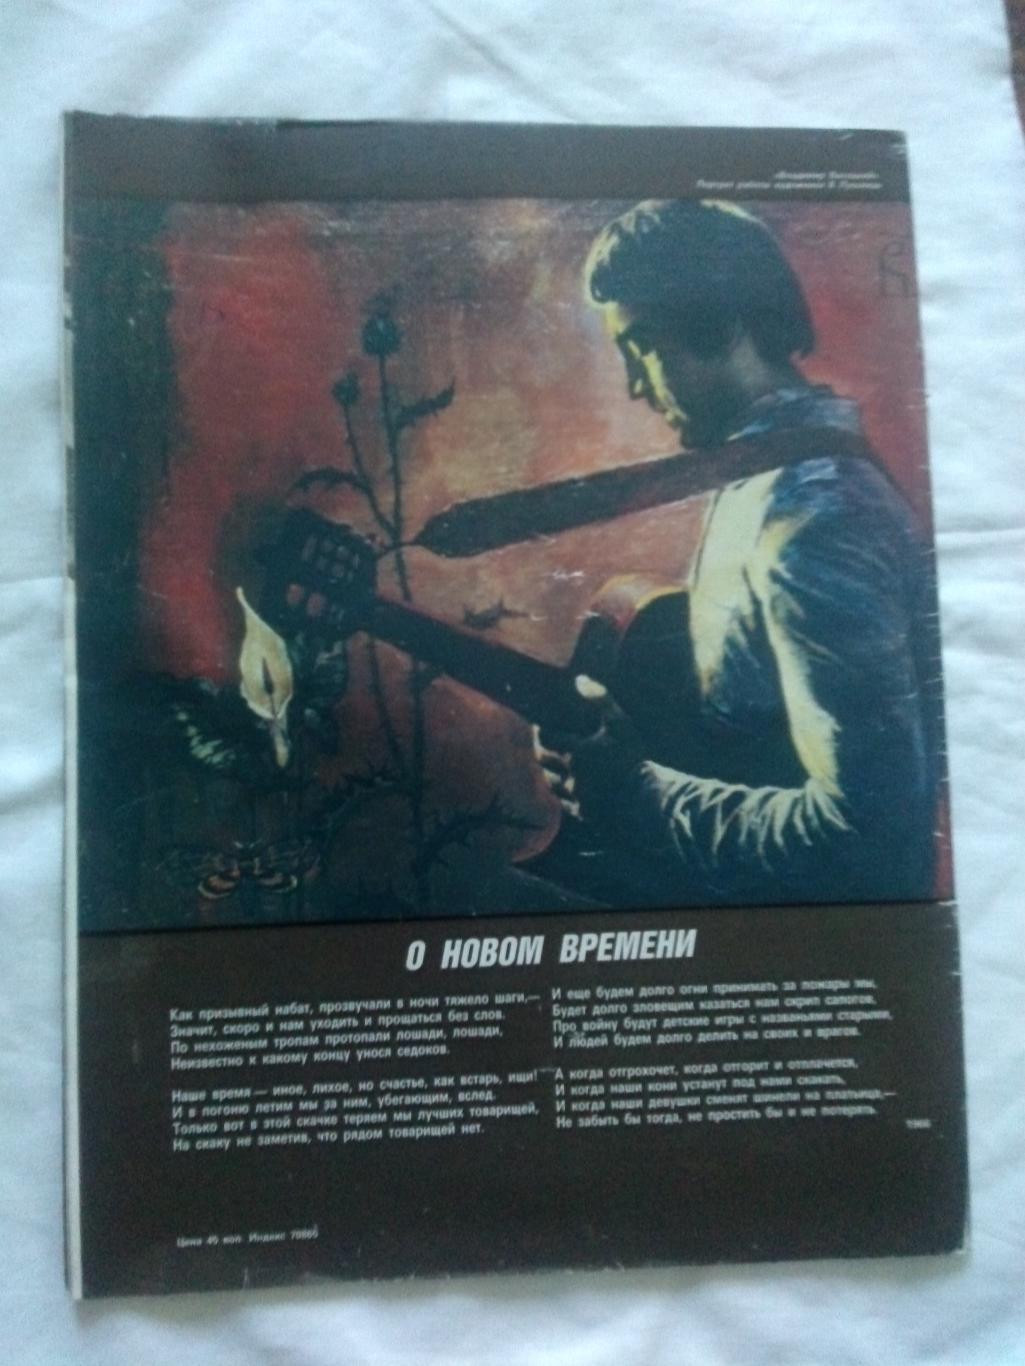 Журнал : Советский экран №3 (март) 1988 г. 50 - летию Владимира Высоцкого 1